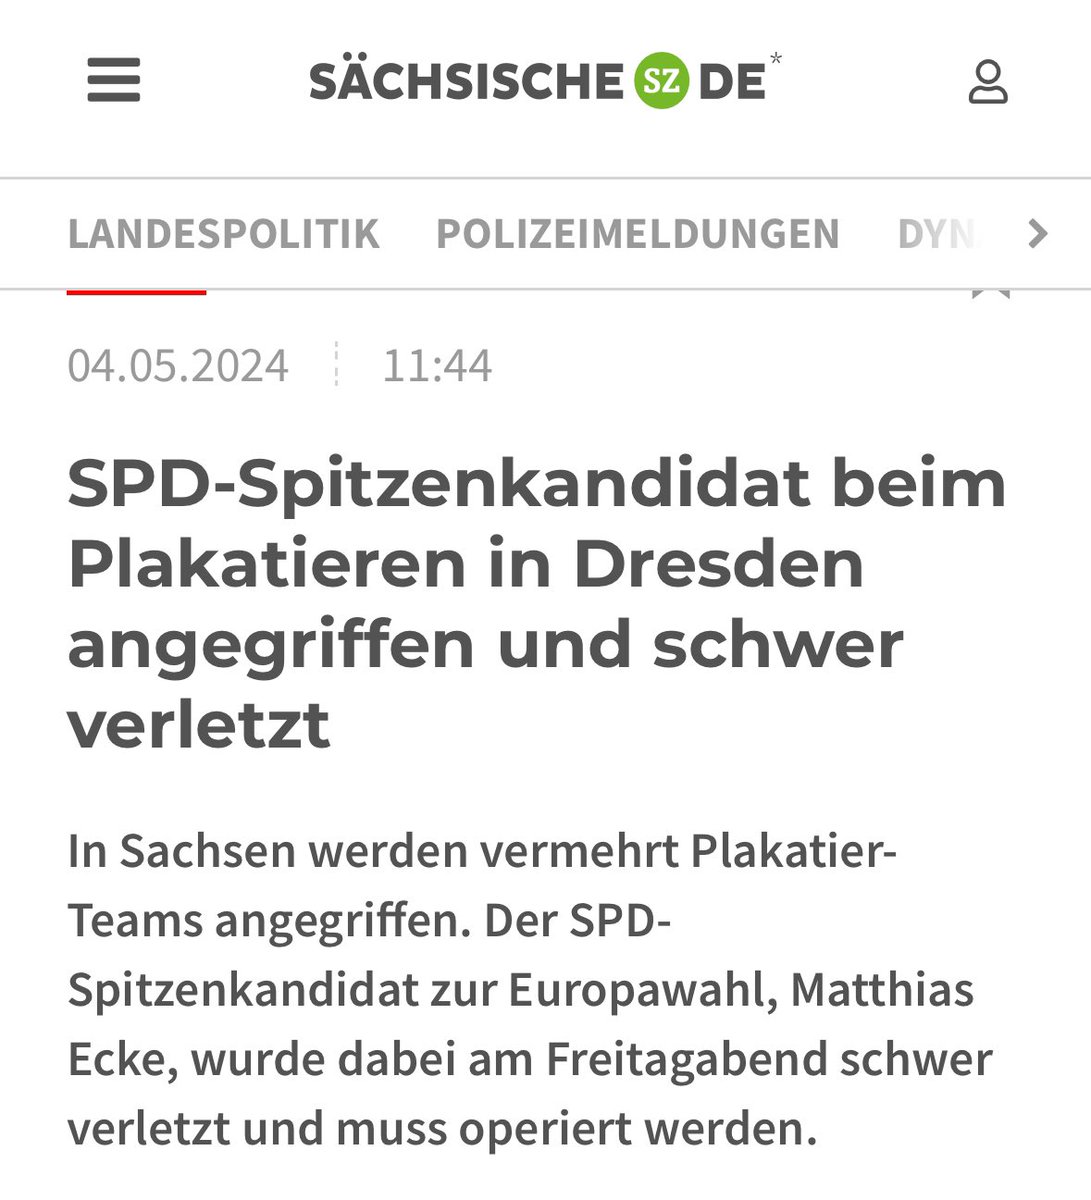 Was zur Hölle. Nach diversen Angriffen auf Grüne liegt jetzt der SPD-Spitzenkandidat im Krankenhaus. Schwer verletzt. Und für solche Gewalttäter brauchen wir keine Resozialisierungs-, sondern Redemokratisierungsmaßnahmen. Im Knast.